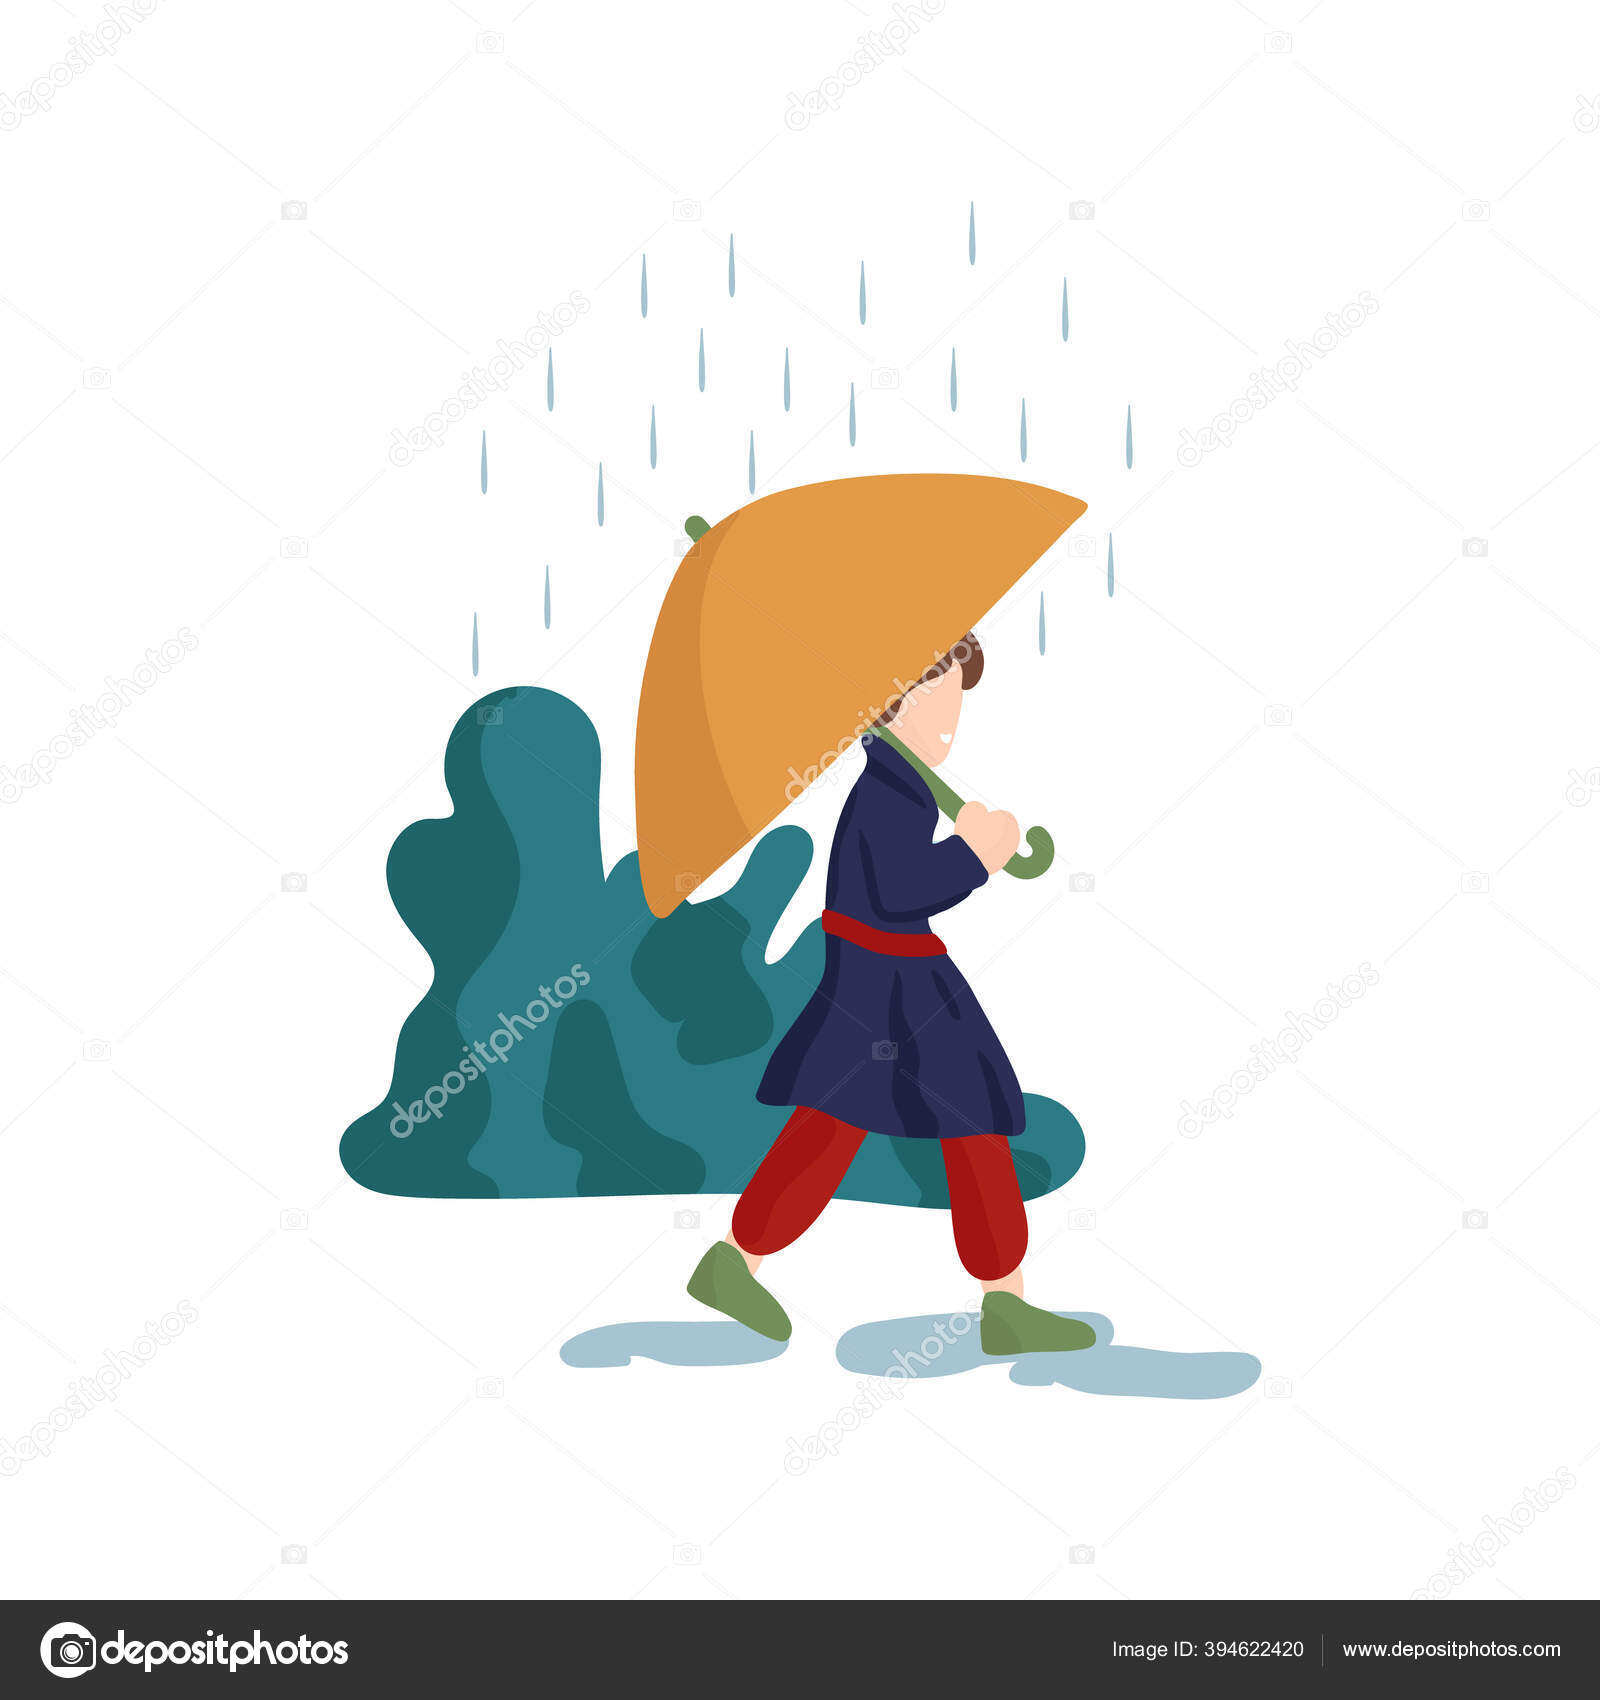 Ilustrasi Seorang Pria Berjalan Di Tengah Hujan Gambar Ini Menunjukkan Sebuah Fenomena Cuaca